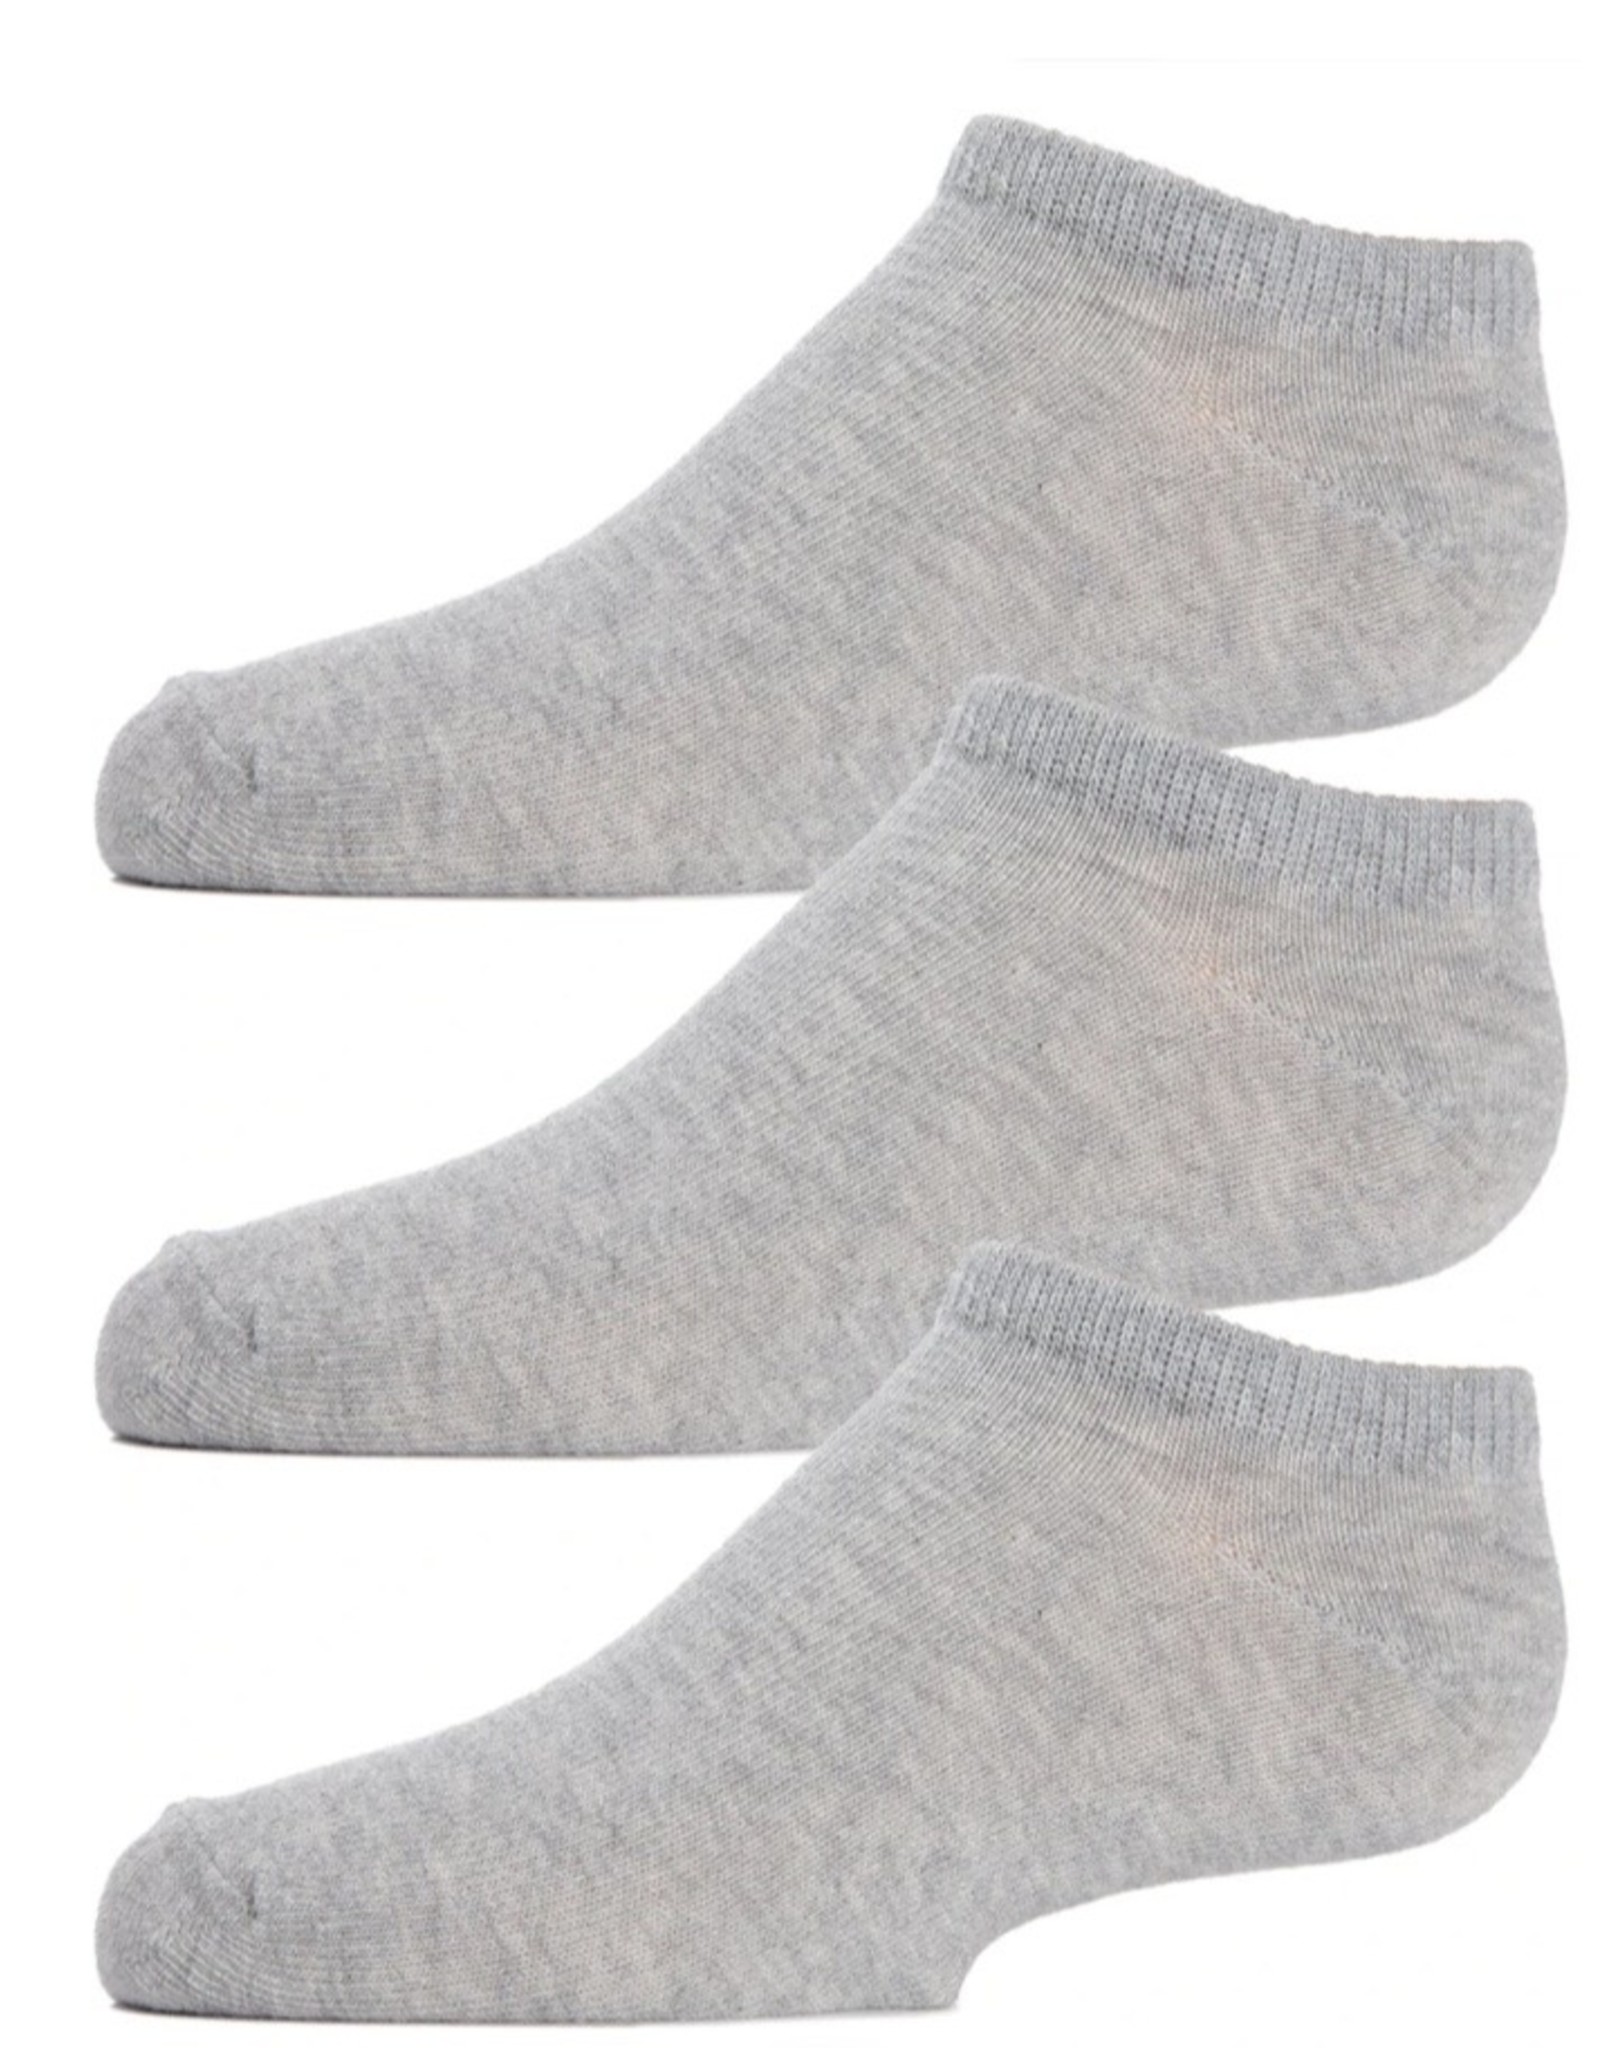 Memoi Memoi Kids Low Cut Socks 3 Pair Pack MK-555